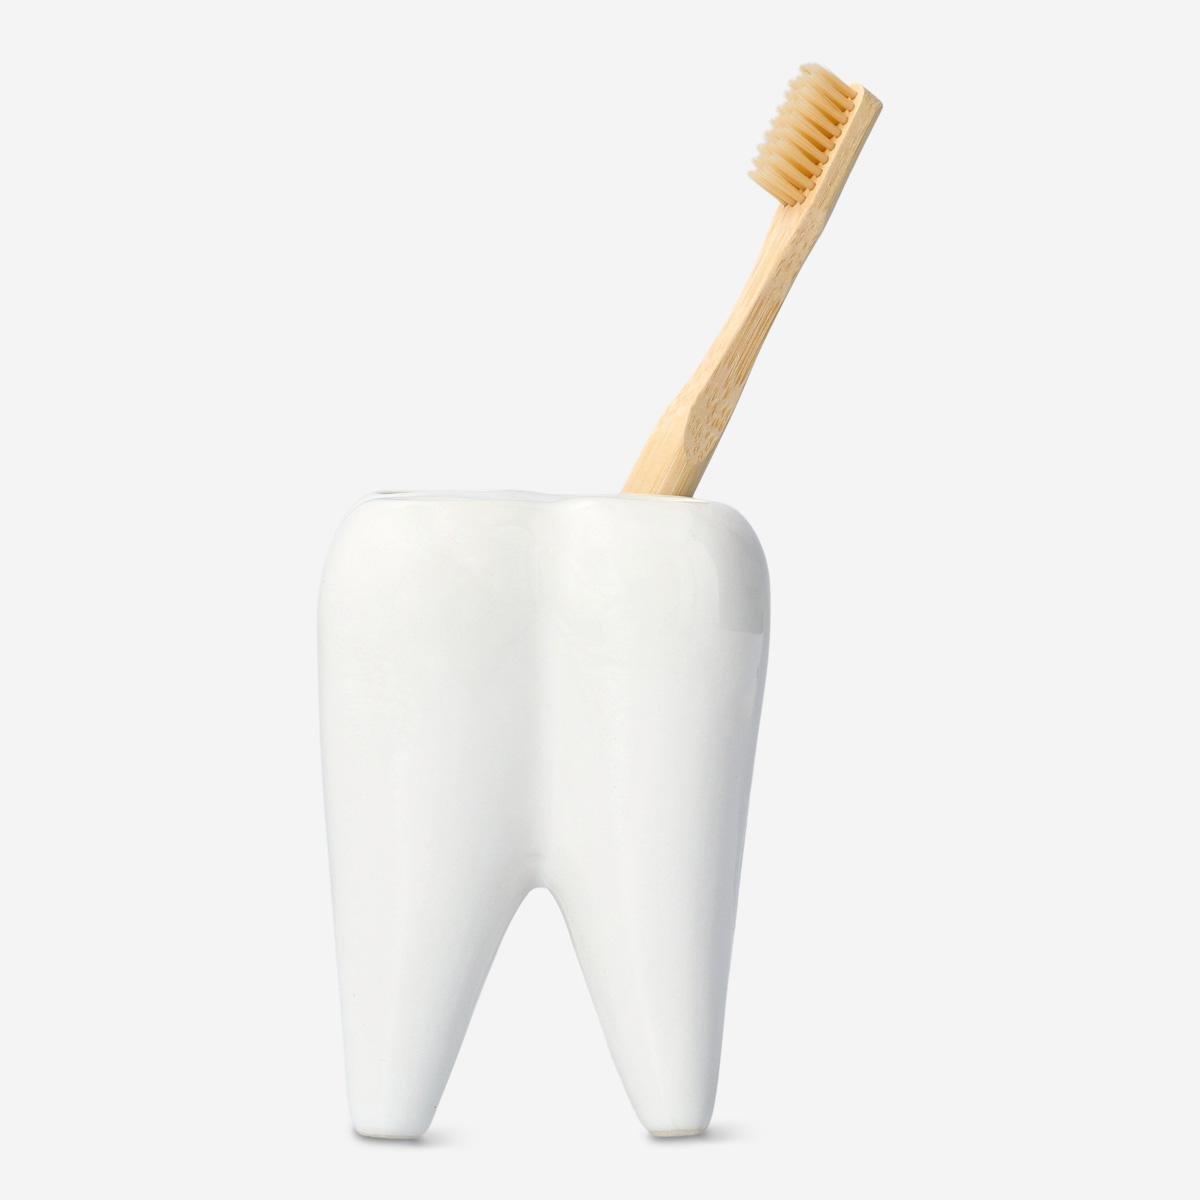 White toothbrush holder